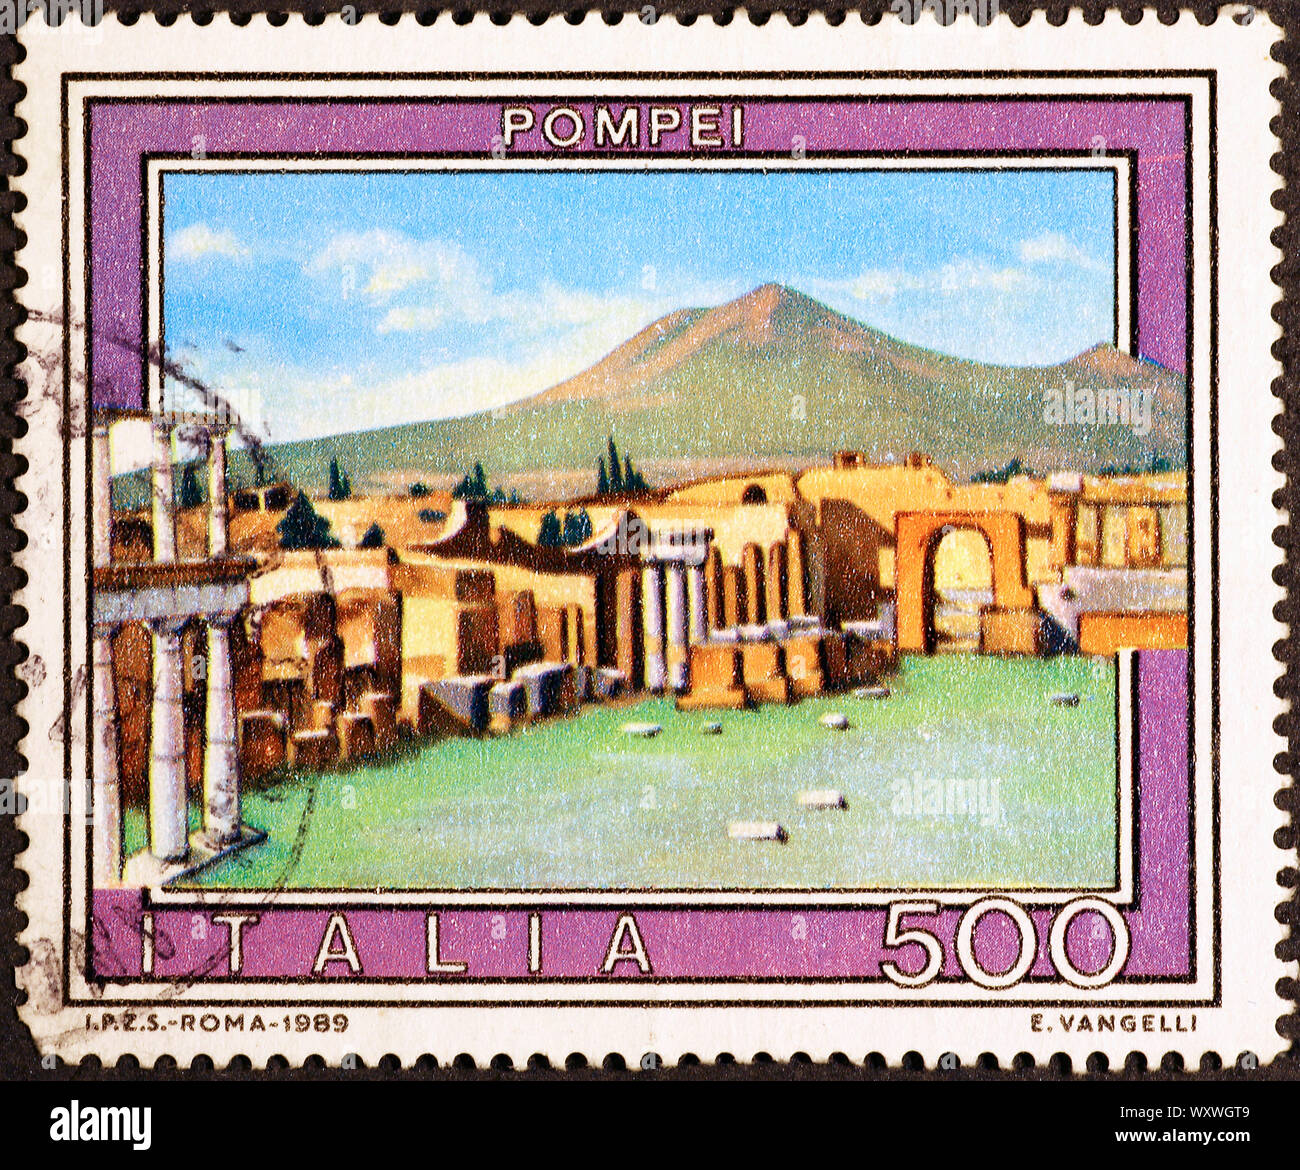 Pompei ruins on italian postage stamp Stock Photo